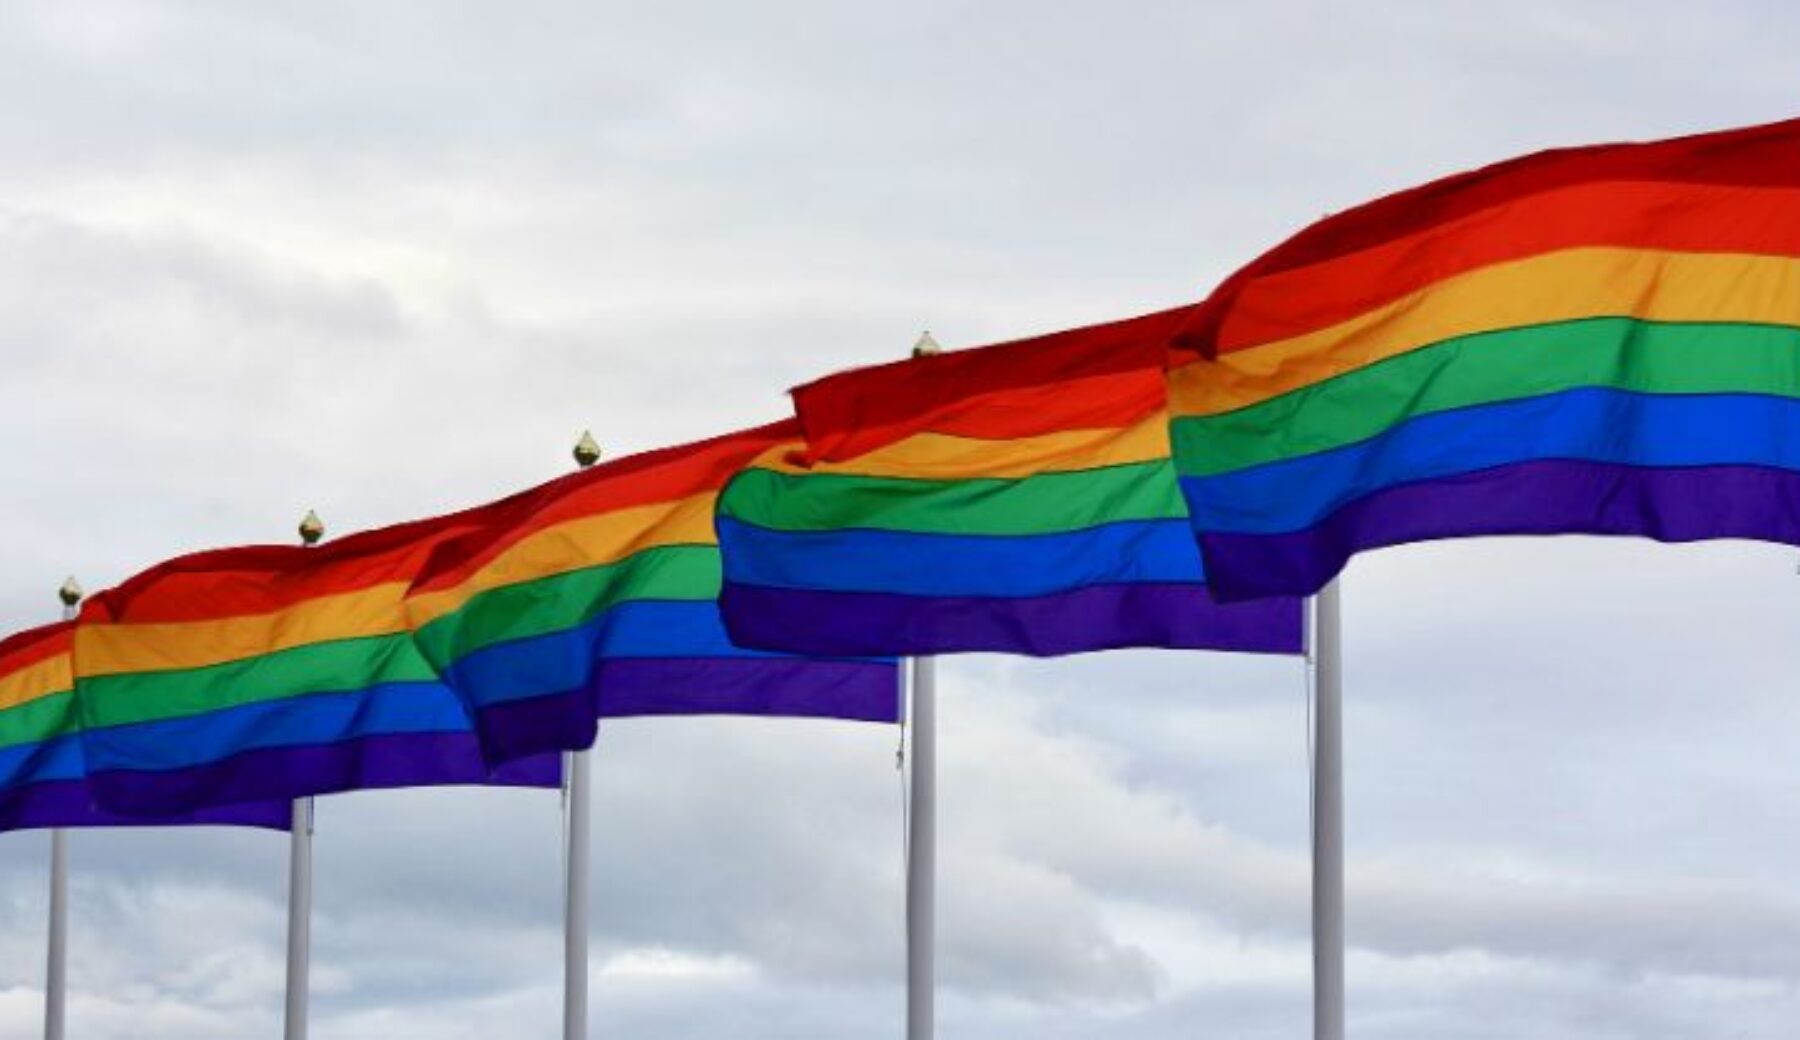 Legge contro omotransfobia, la Camera approva il disegno a scrutinio segreto